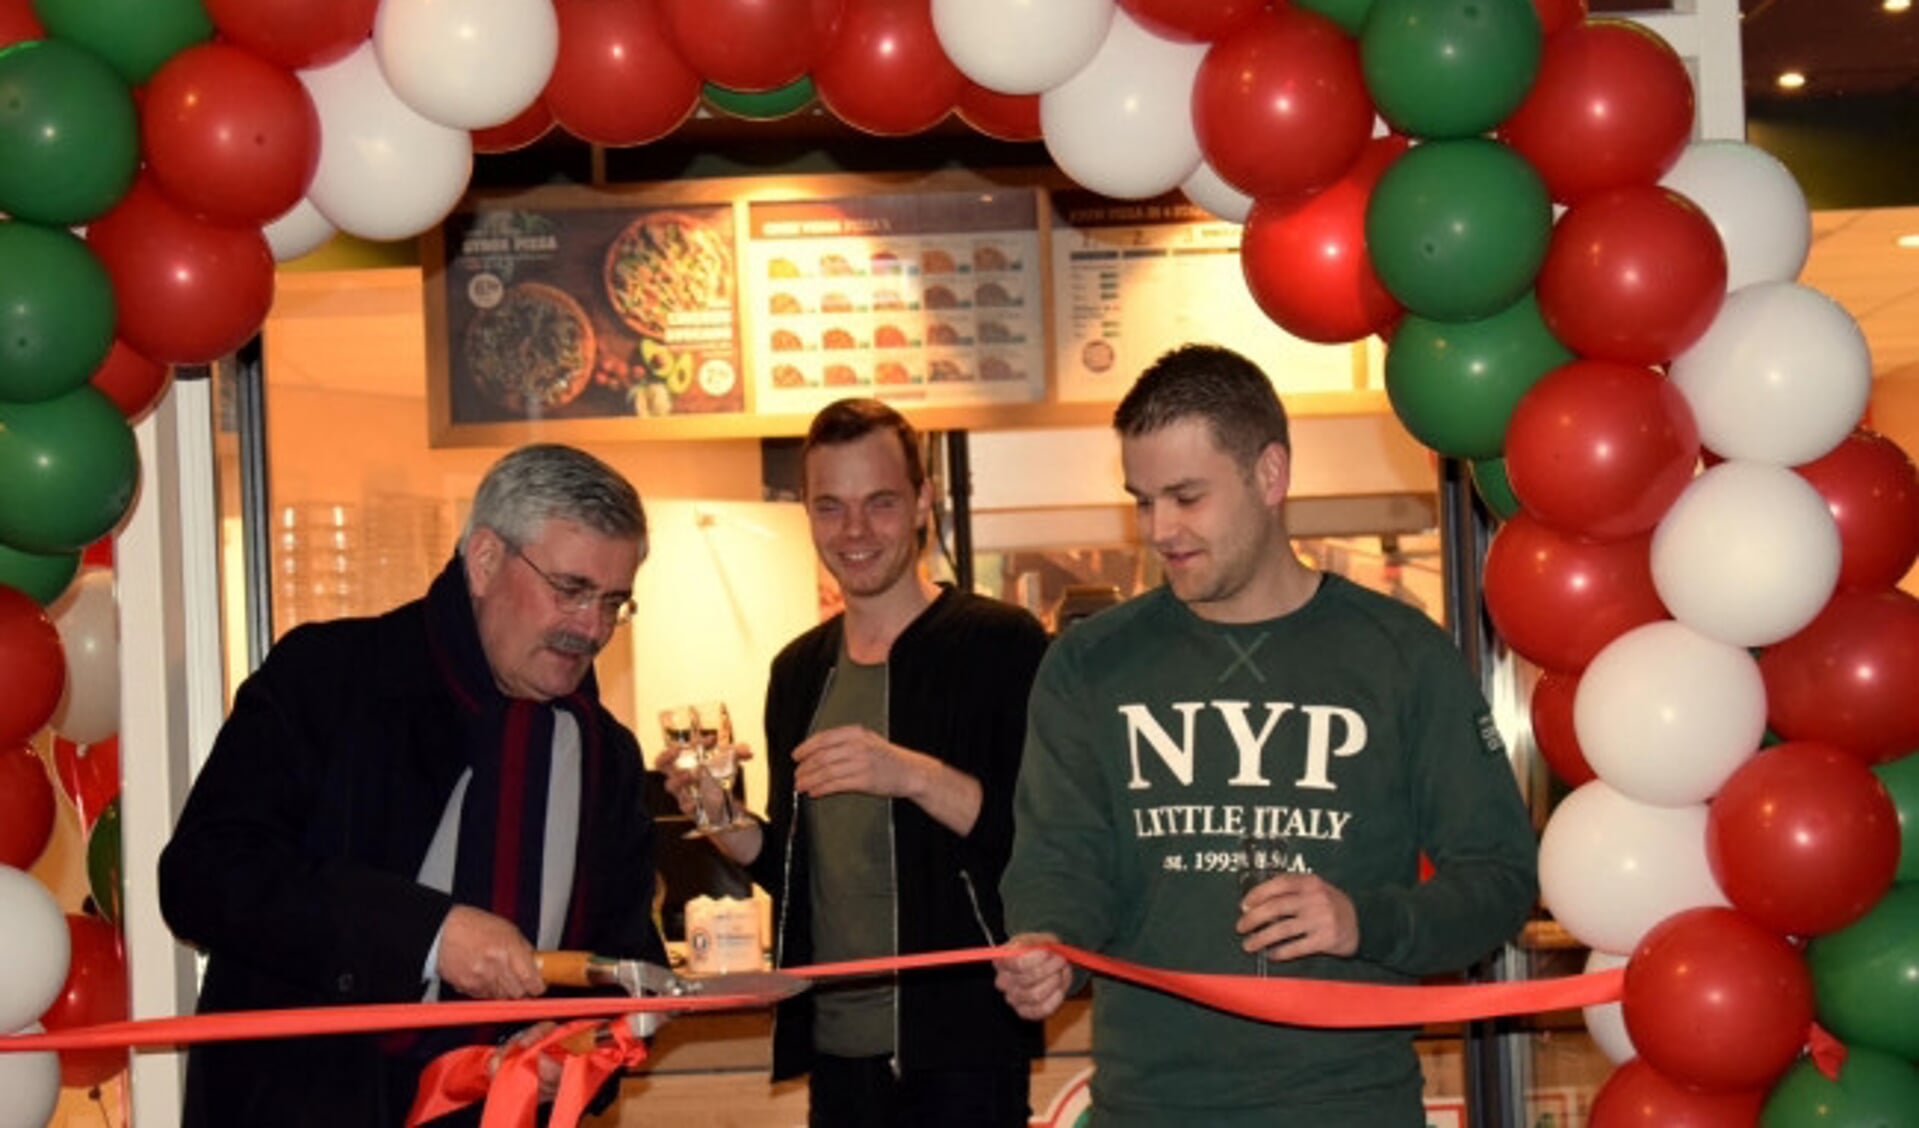  Aat de Jonge (links) en Rick Vrakking (rechts) bij de officiële opening van New York Pizza in Dronten.